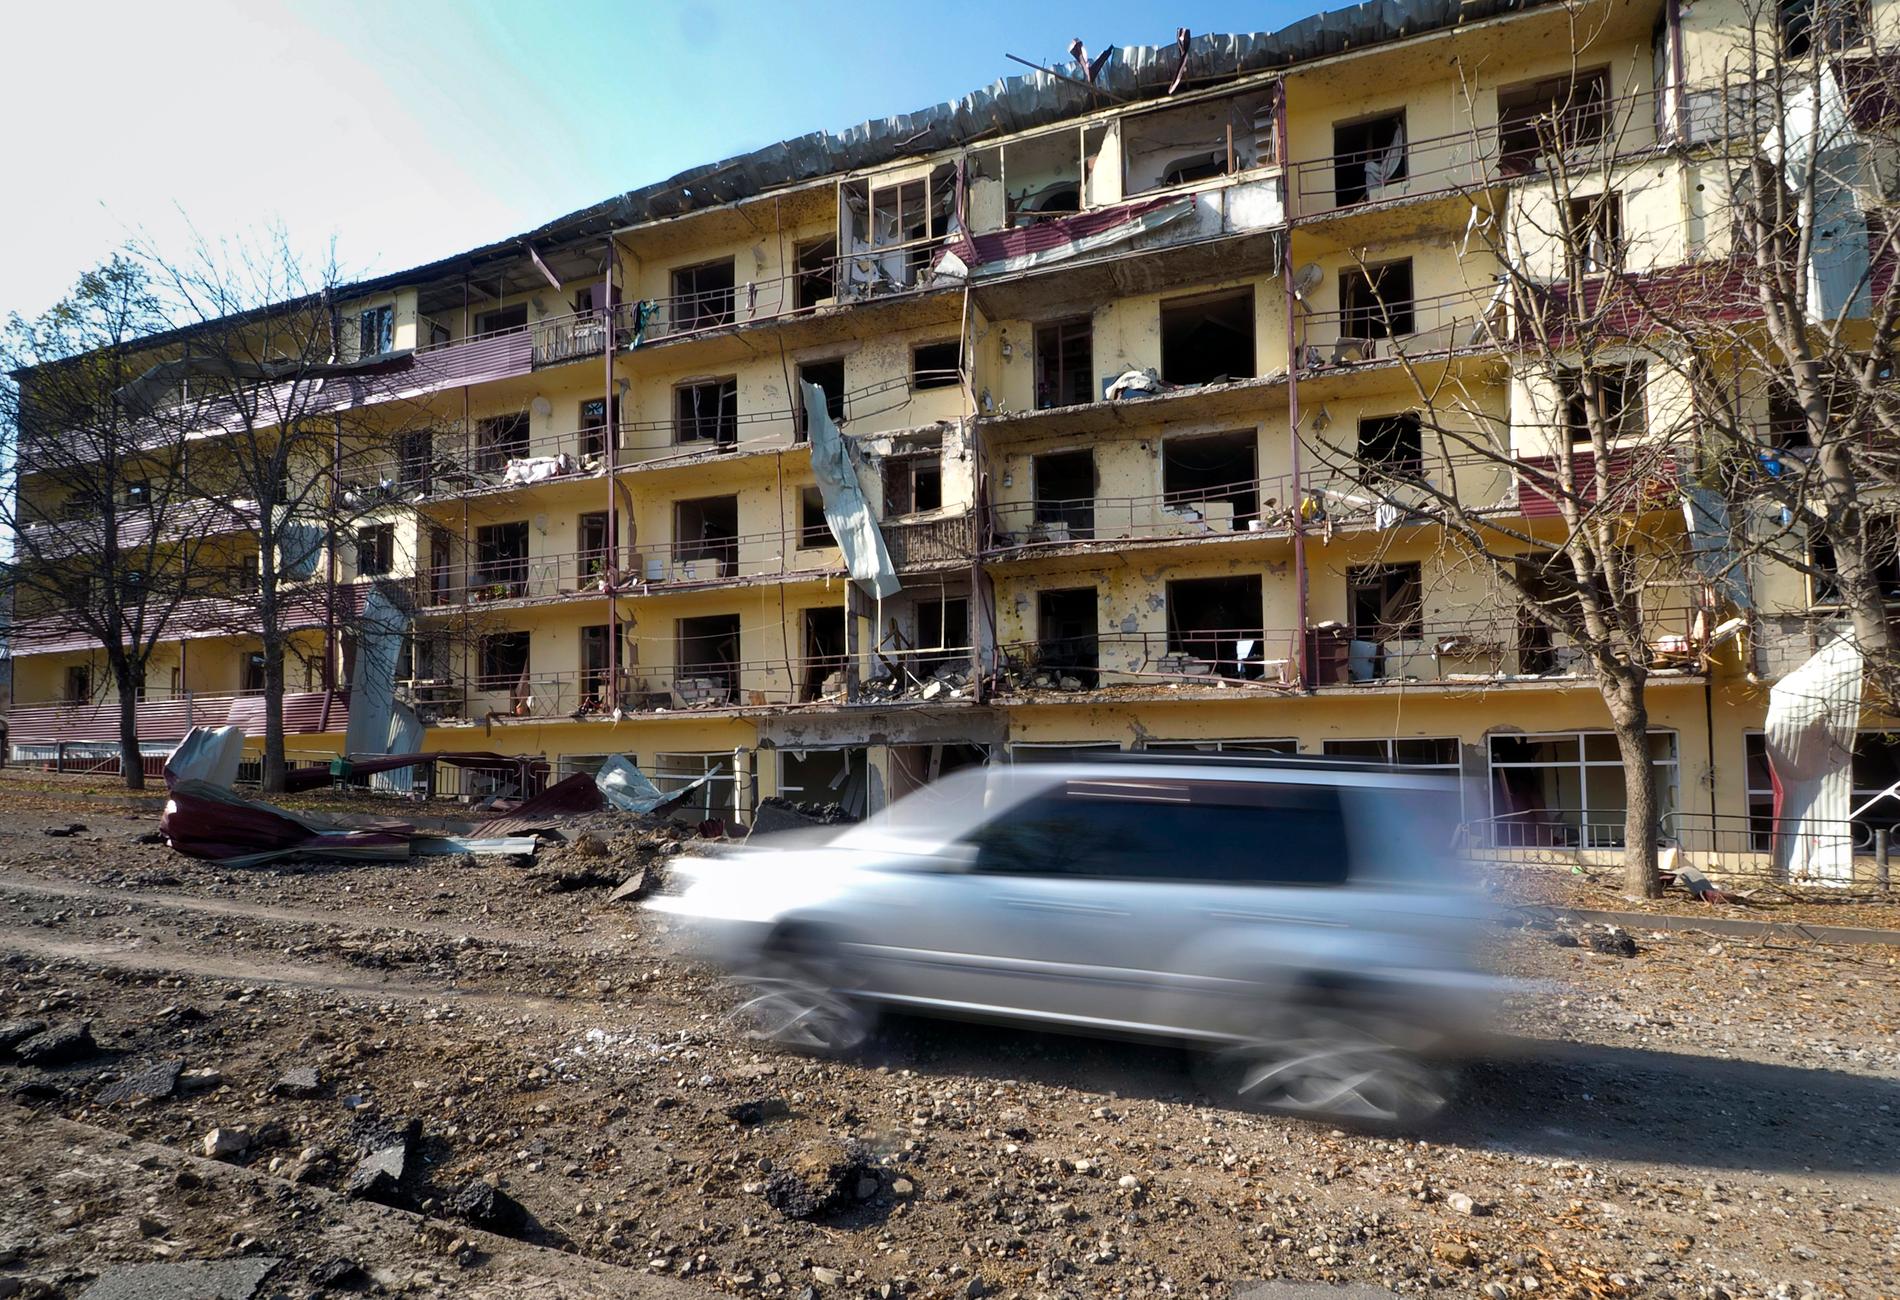 Ett hus skadat av artilleribeskjutning i utkanten av Stepanakert i Nagorno-Karabach. Bilden är från 2020.